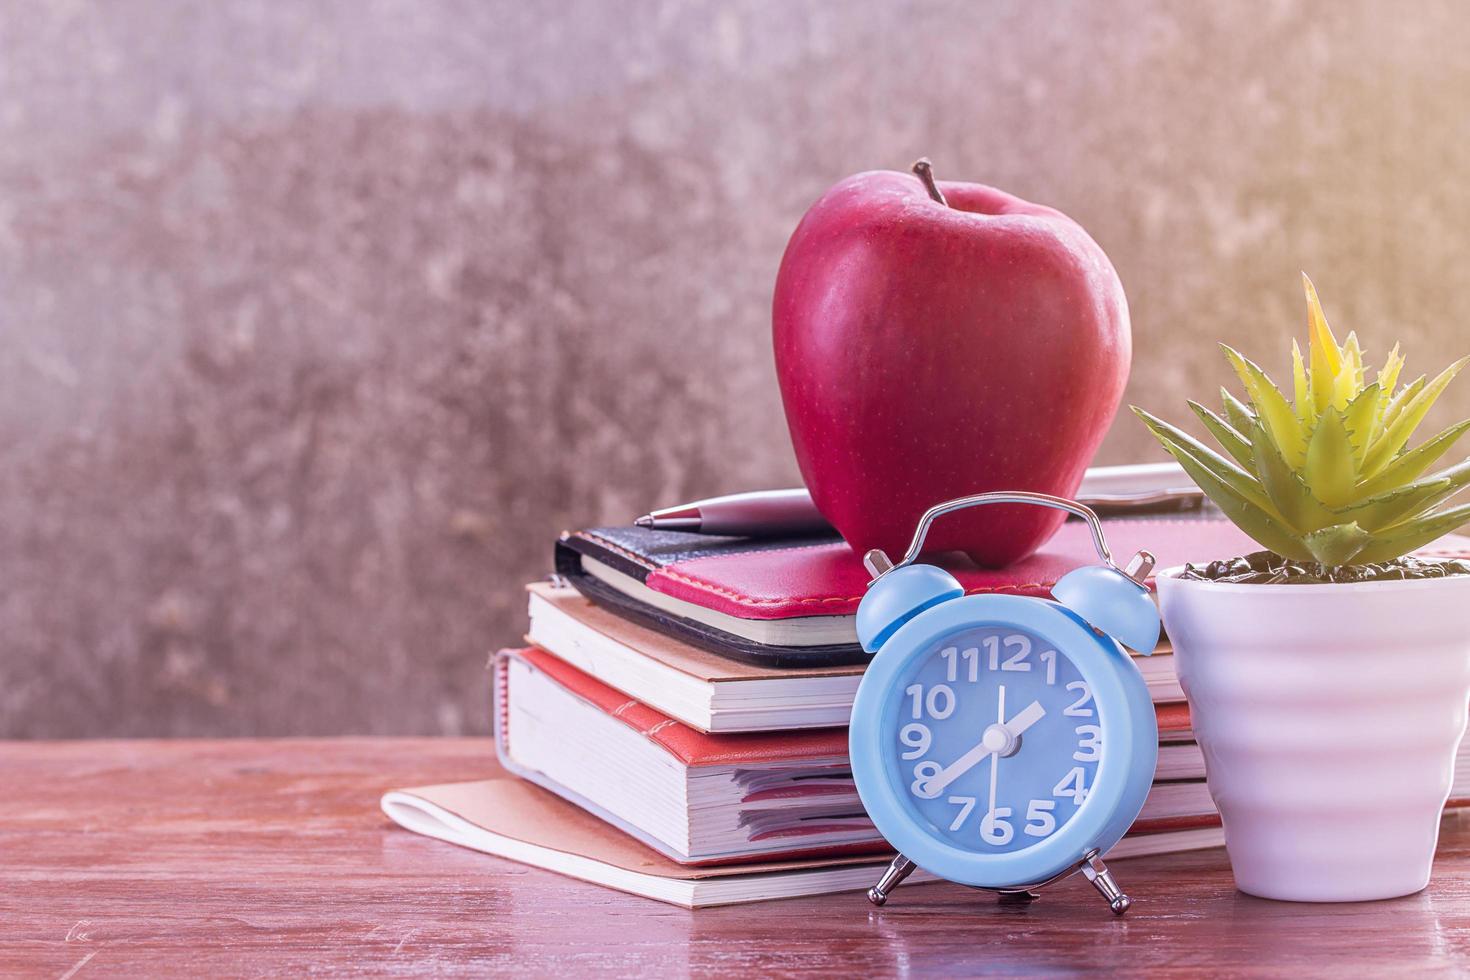 terug naar school, notebook, wekker, rode appel, bloem op houten tafel met onscherpe achtergrond foto